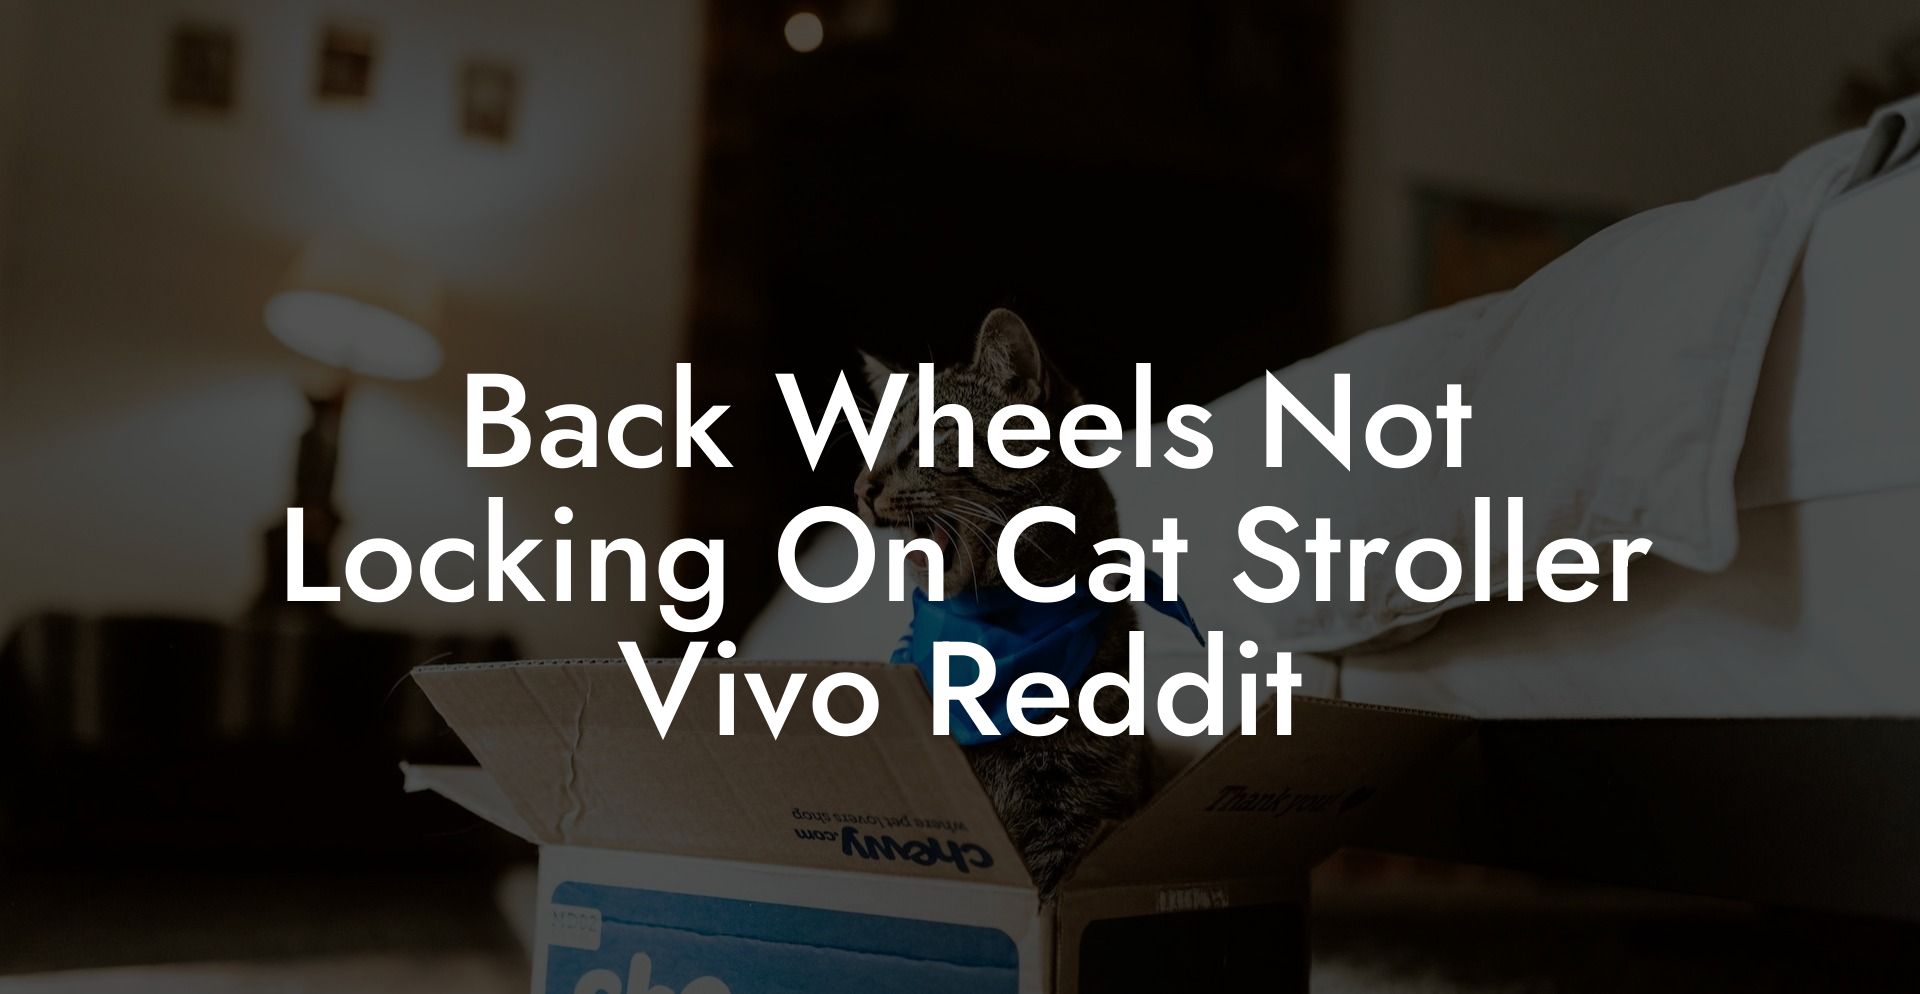 Back Wheels Not Locking On Cat Stroller Vivo Reddit